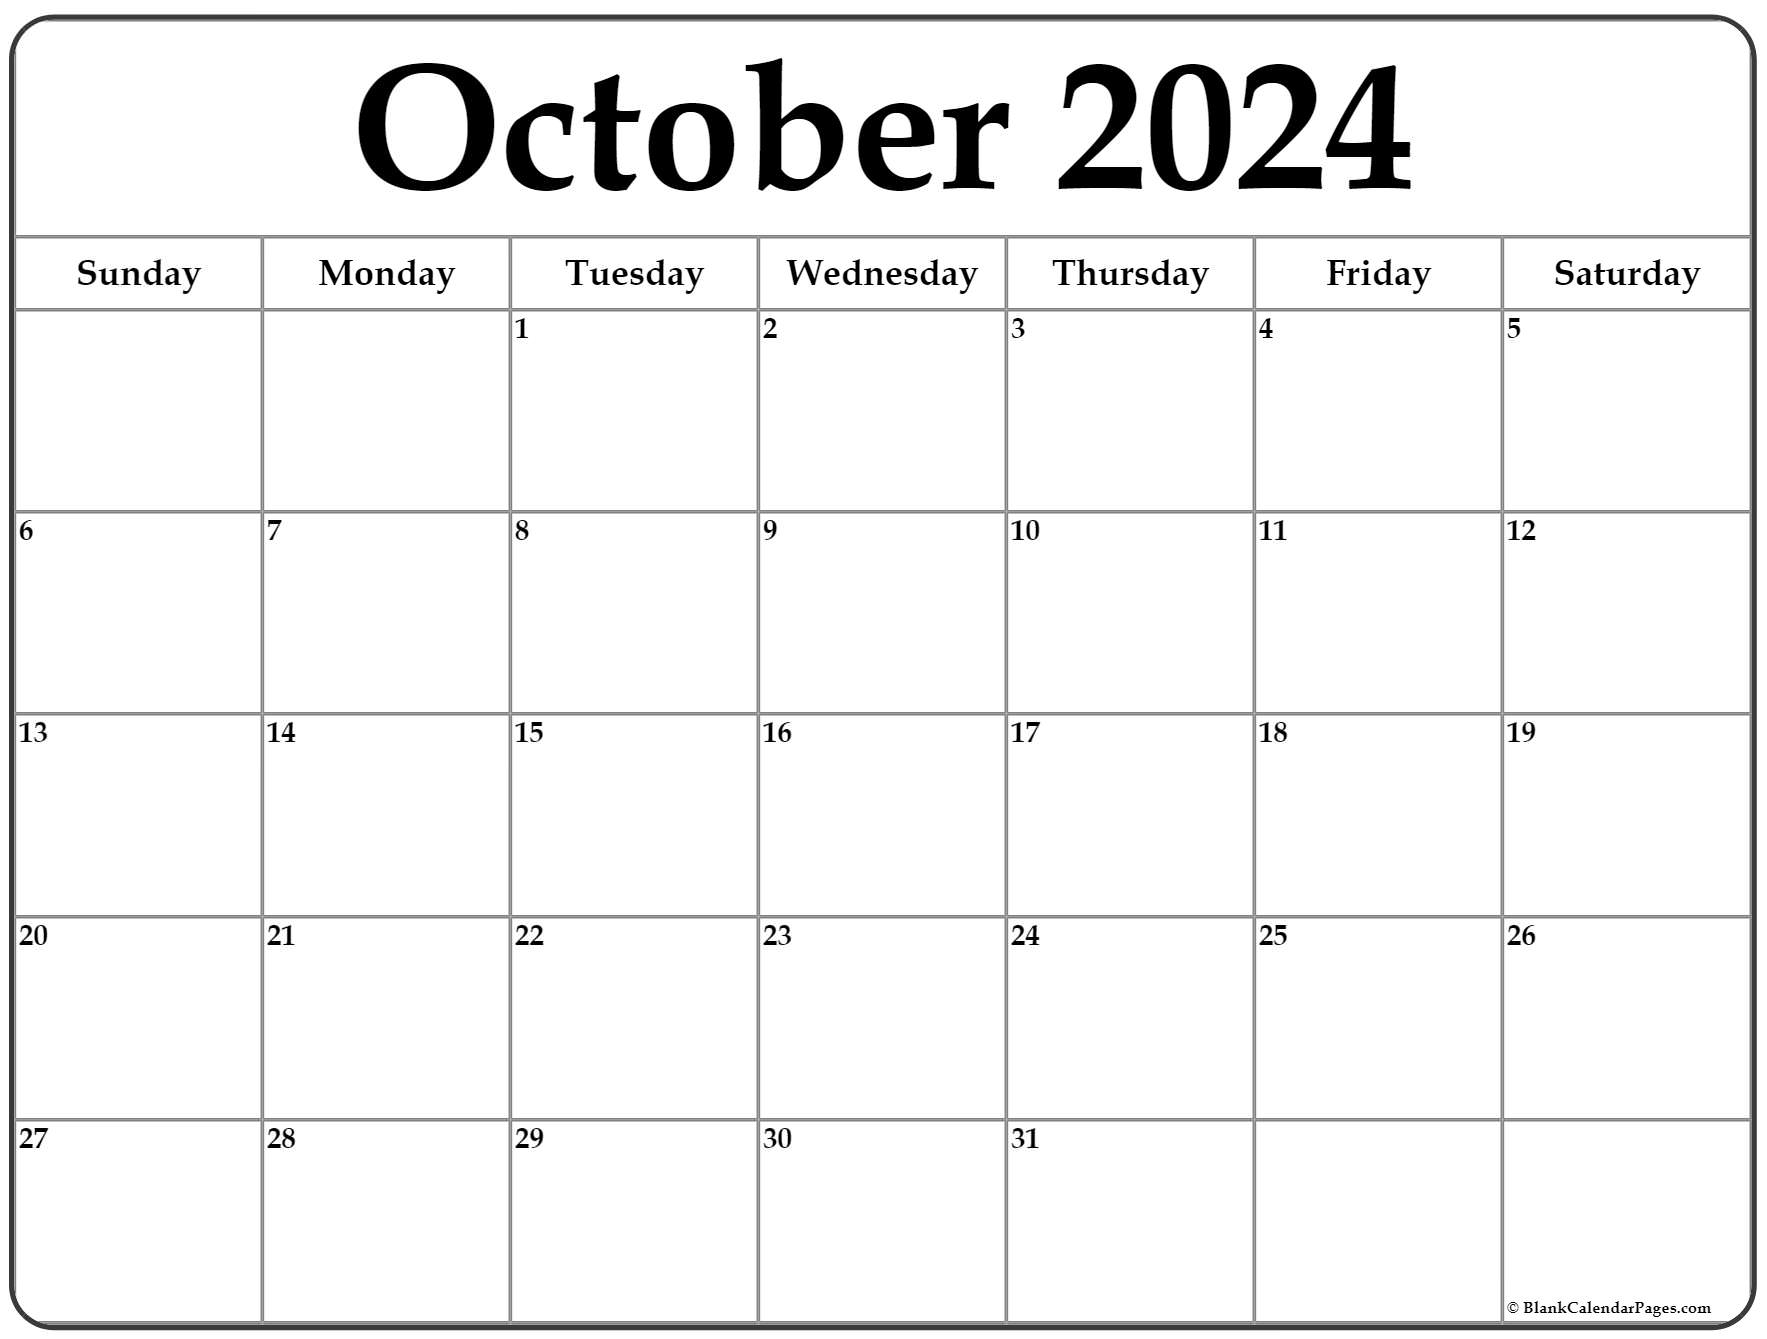 October 2022 Calendar Printable October 2022 Calendar | Free Printable Calendar Templates